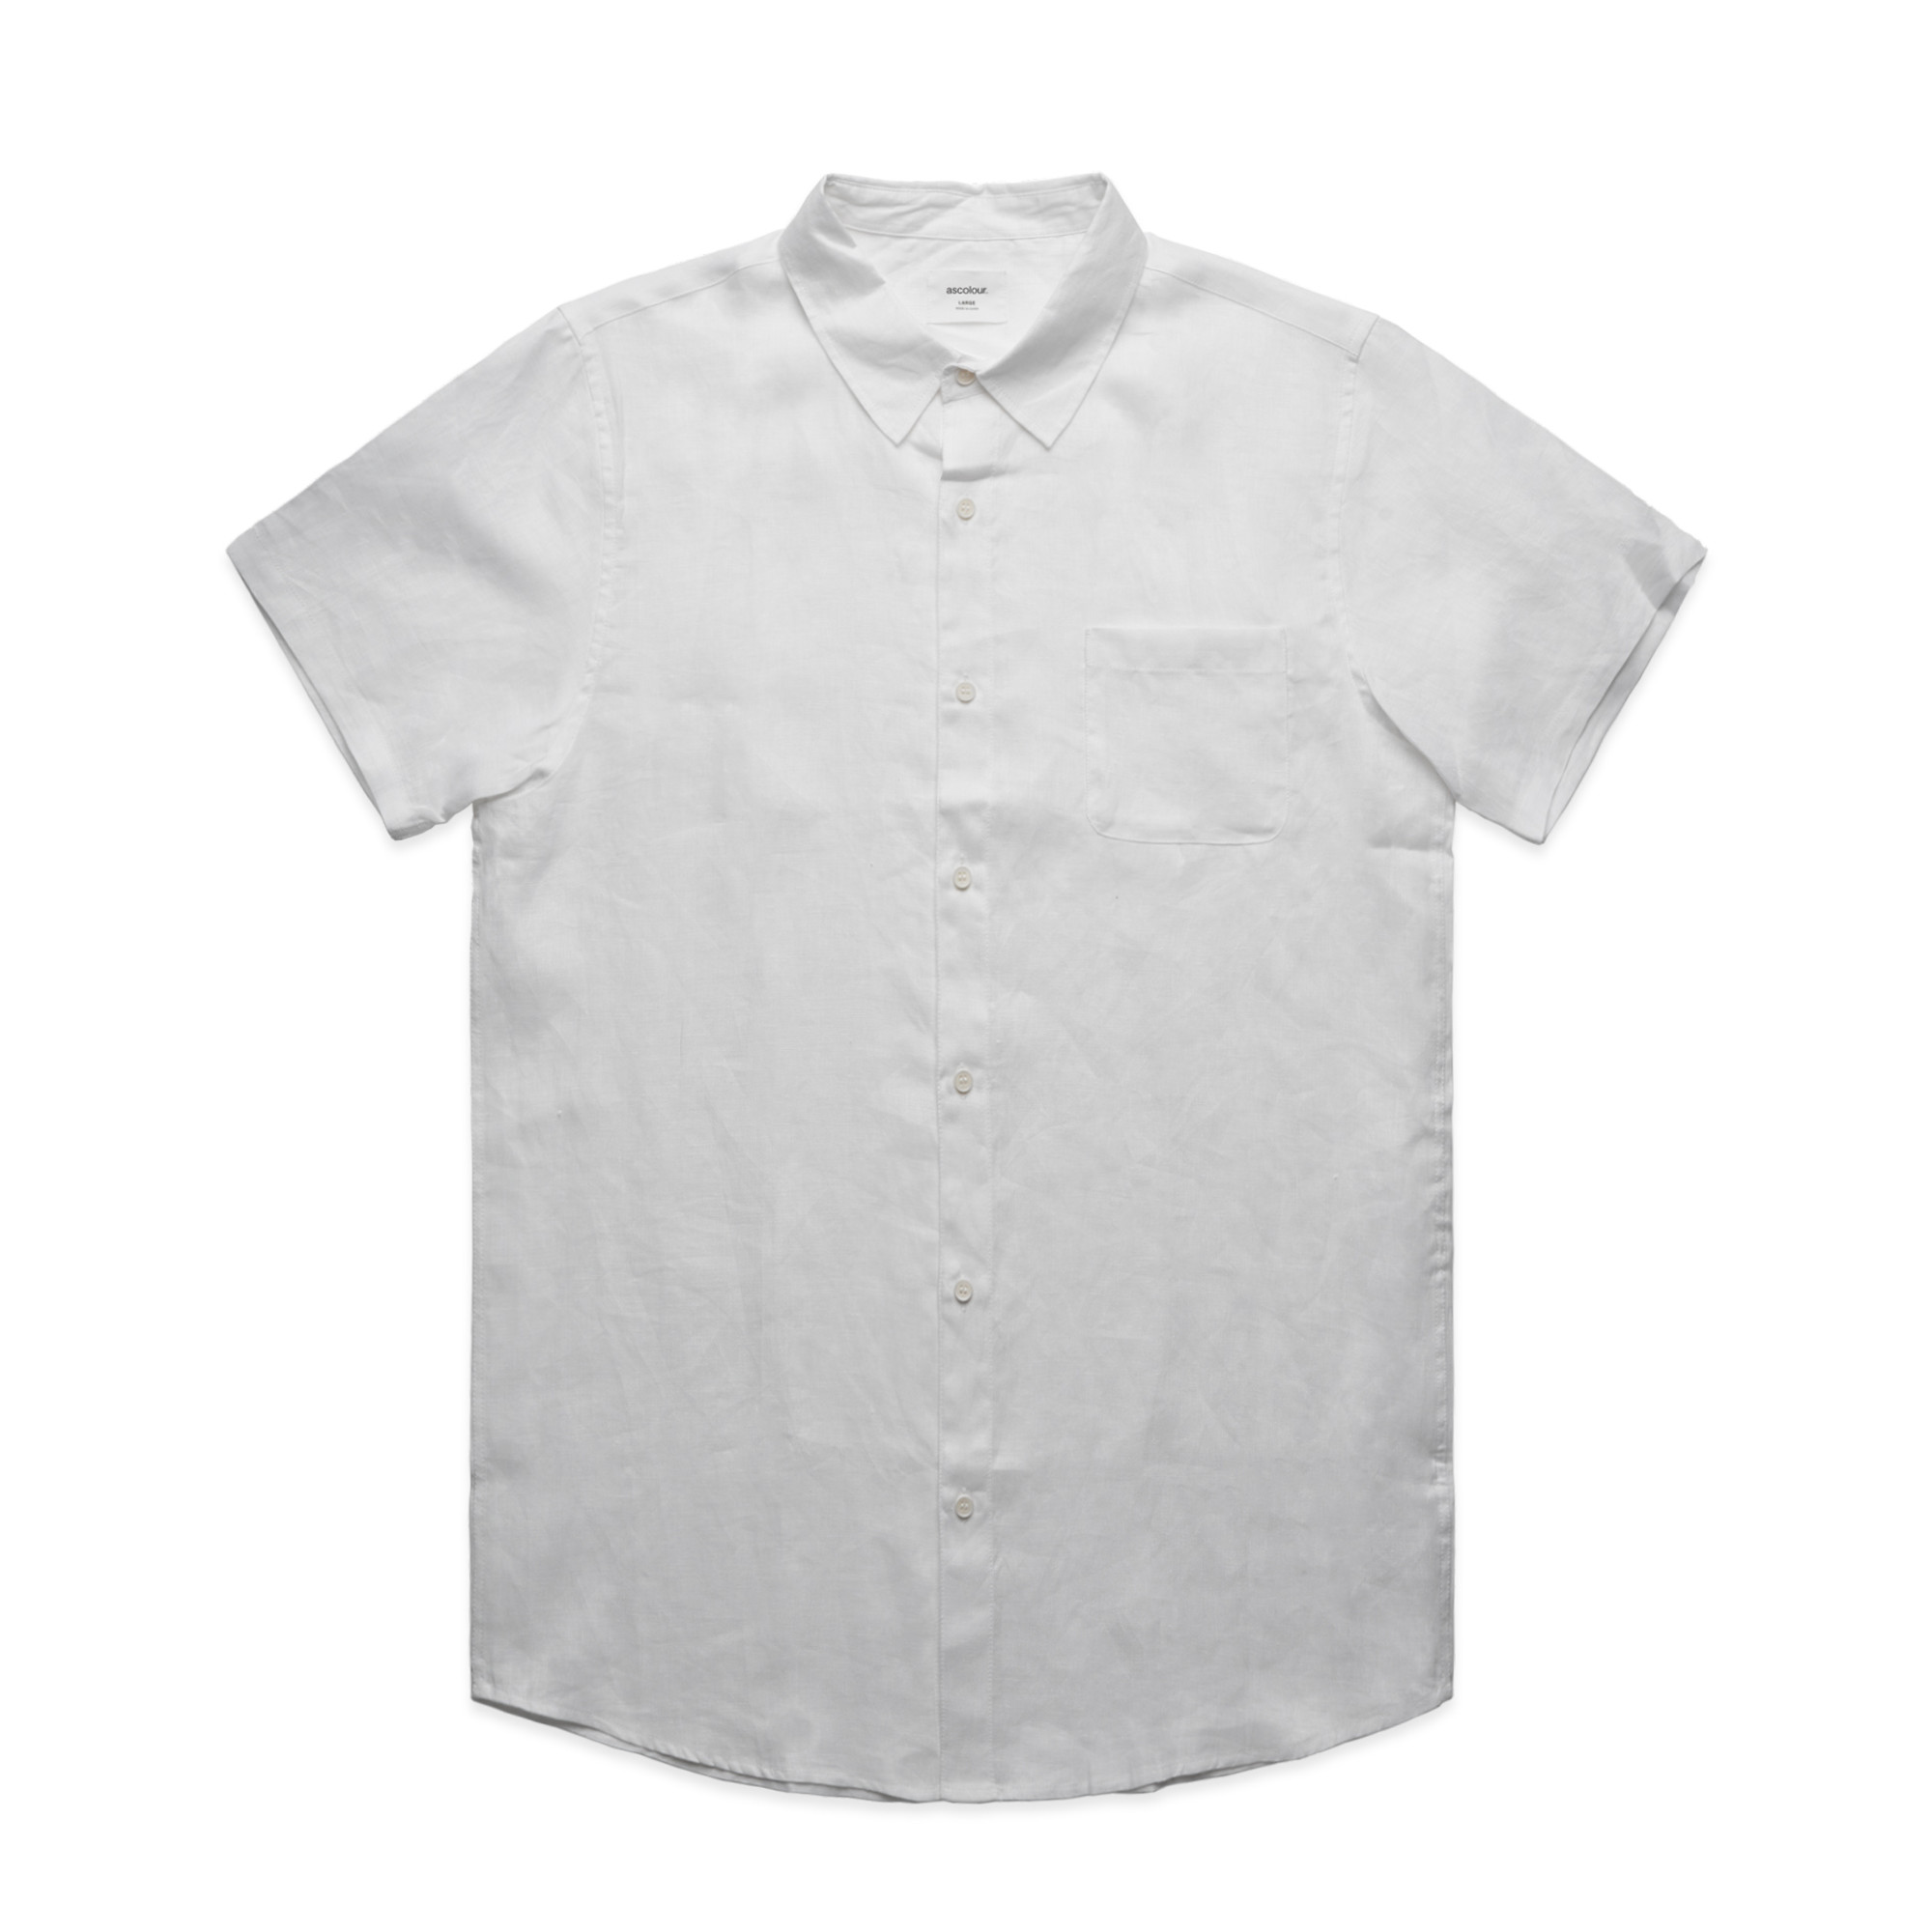 Mens Linen Shirt | Business Work Shirts | Mens AS Colour Short Sleeve ...